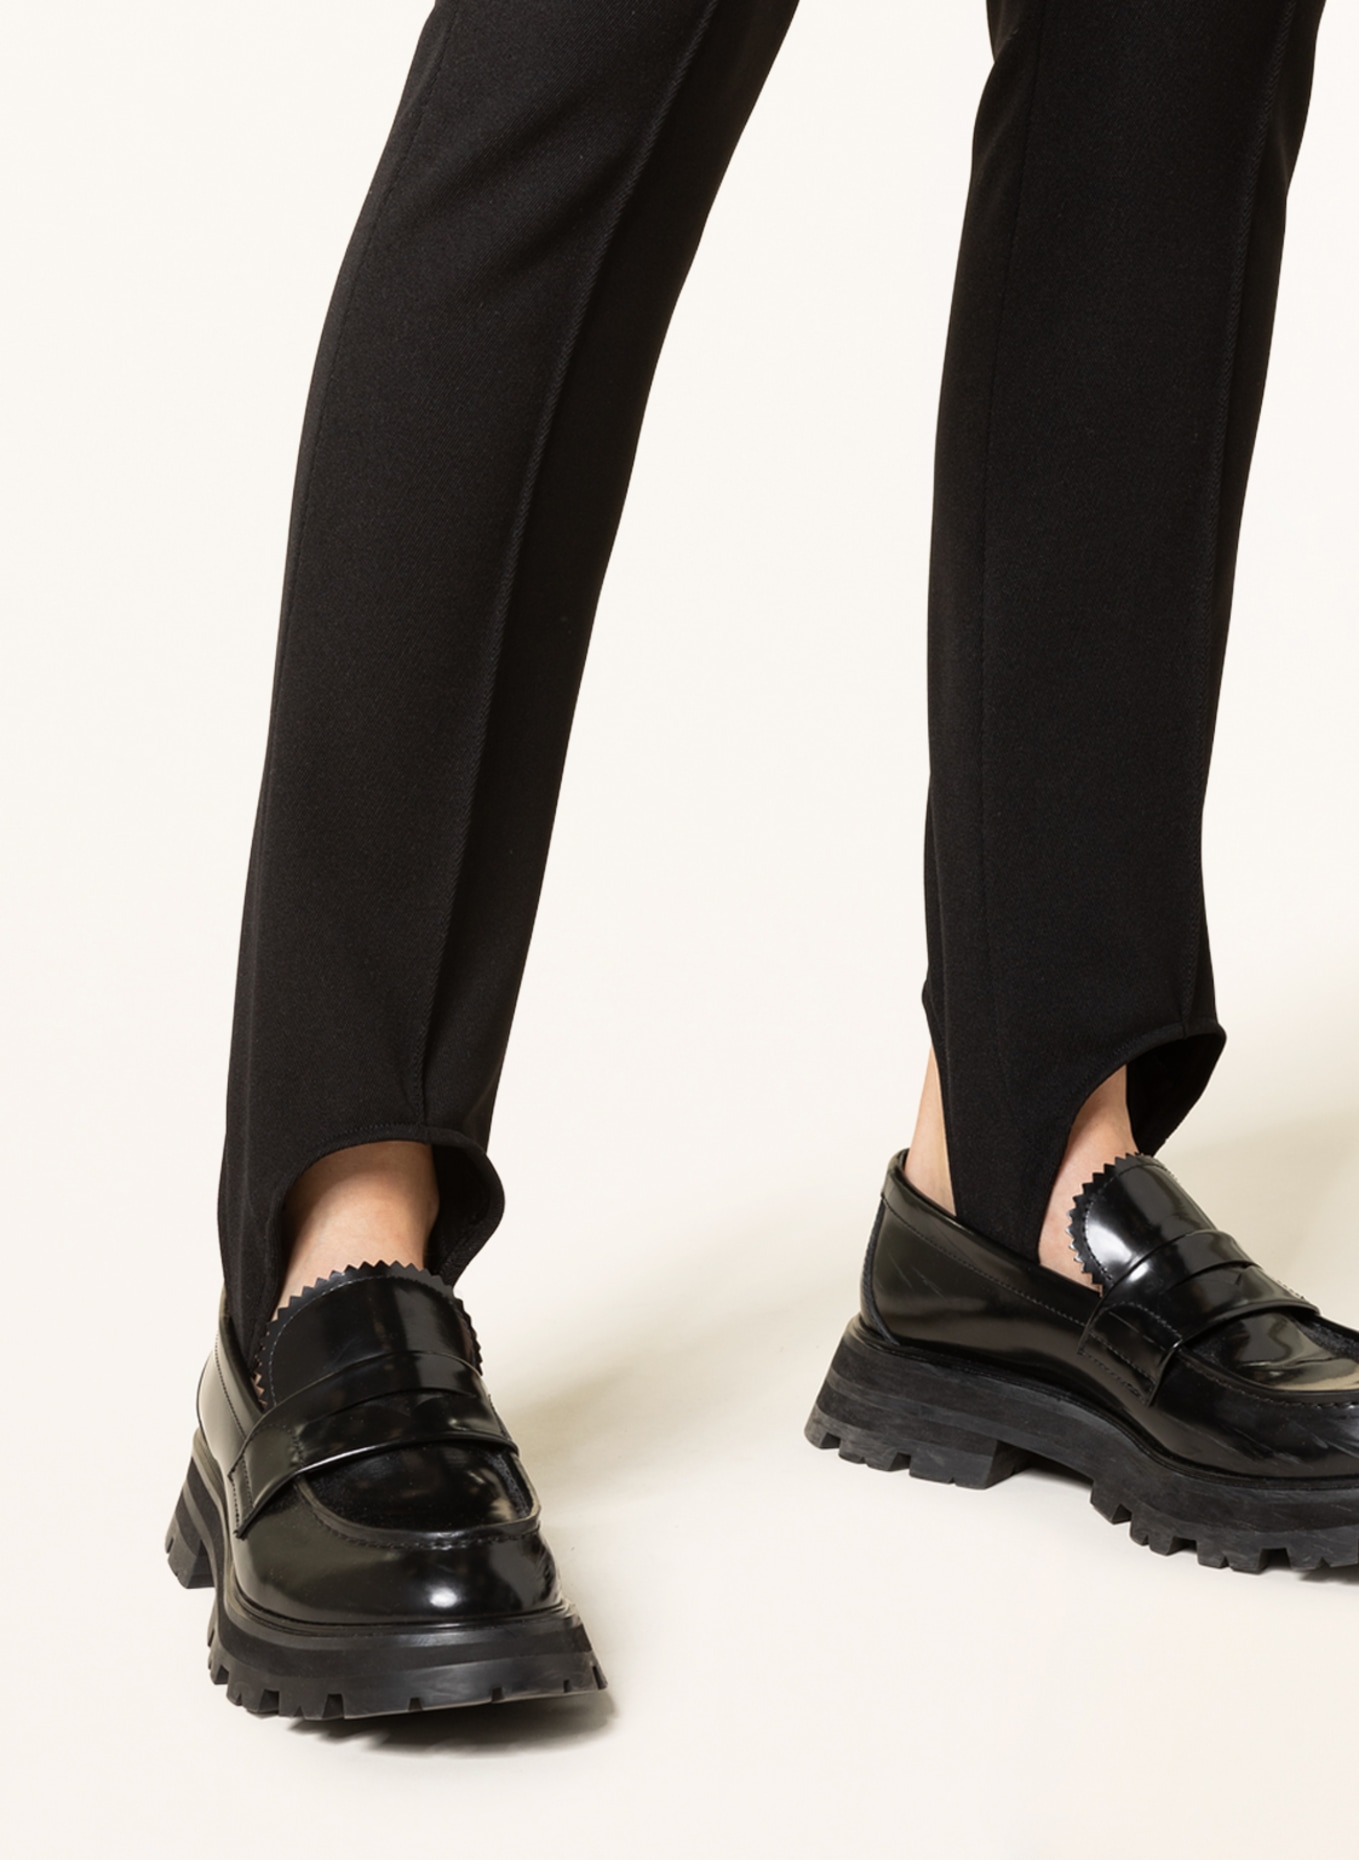 MONCLER GRENOBLE Stirrup ski pants, Color: BLACK (Image 5)